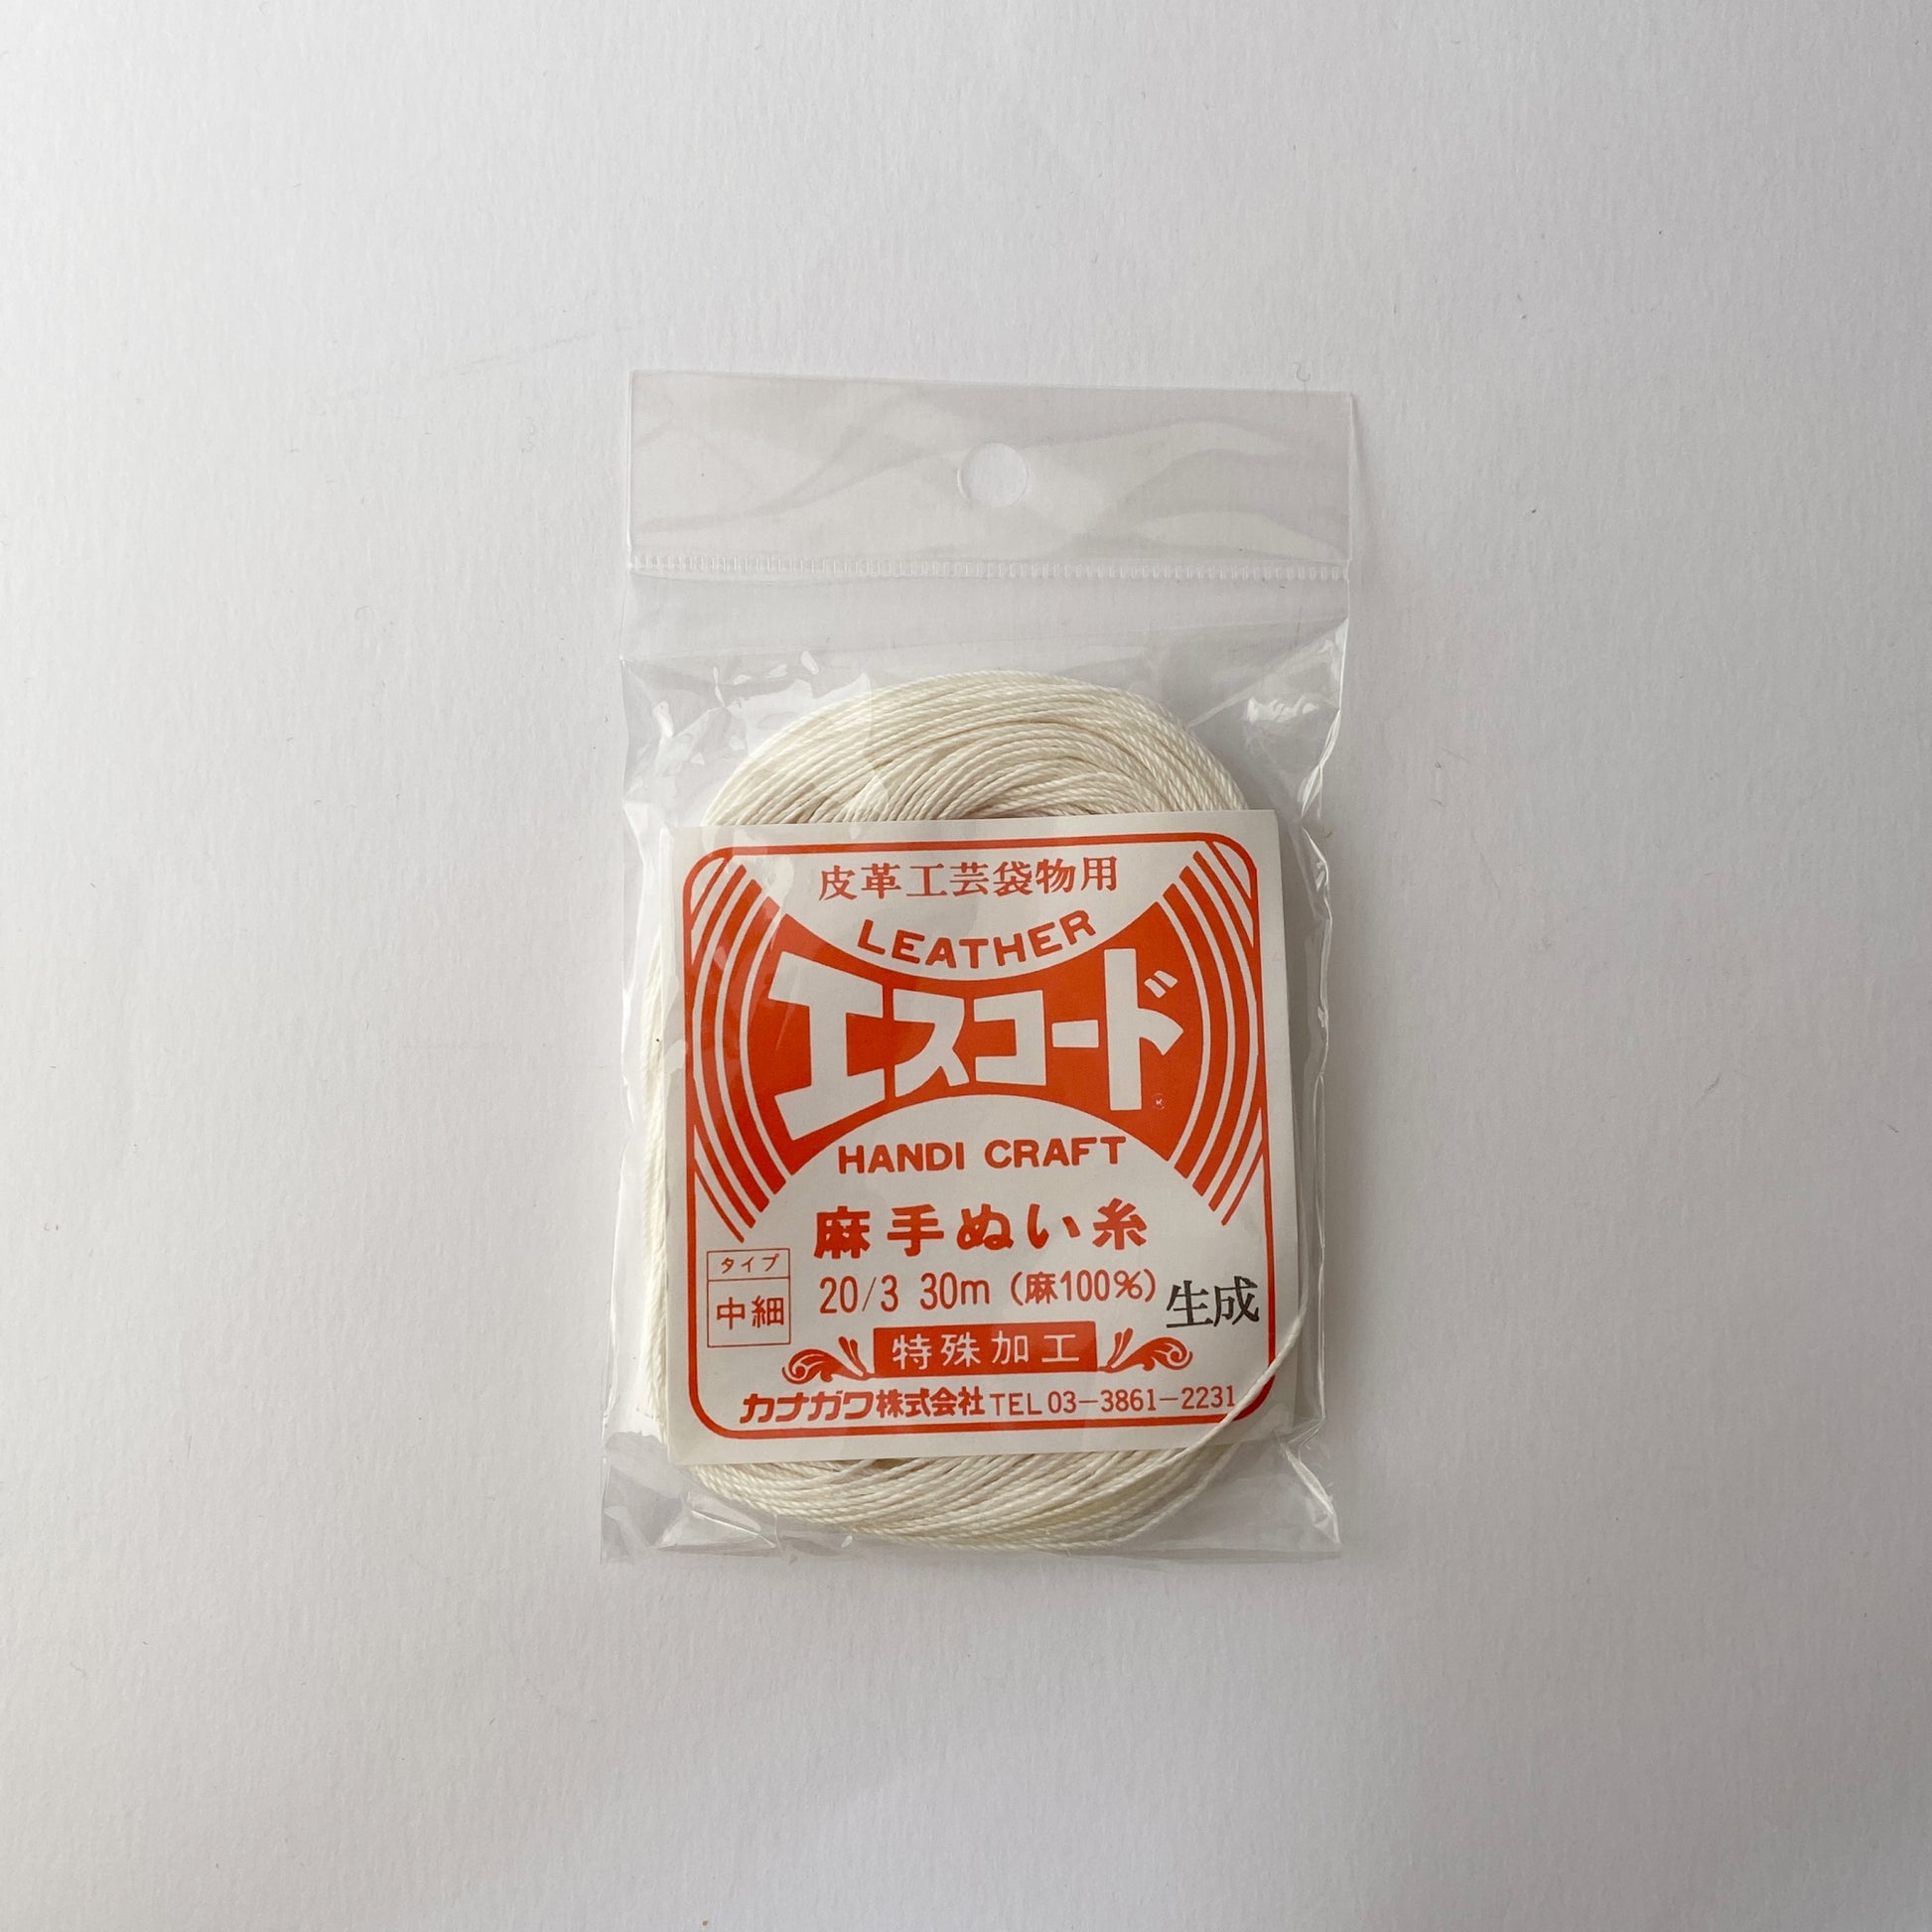 kanagawa : hemp linen sewing thread 20/3 made in japan